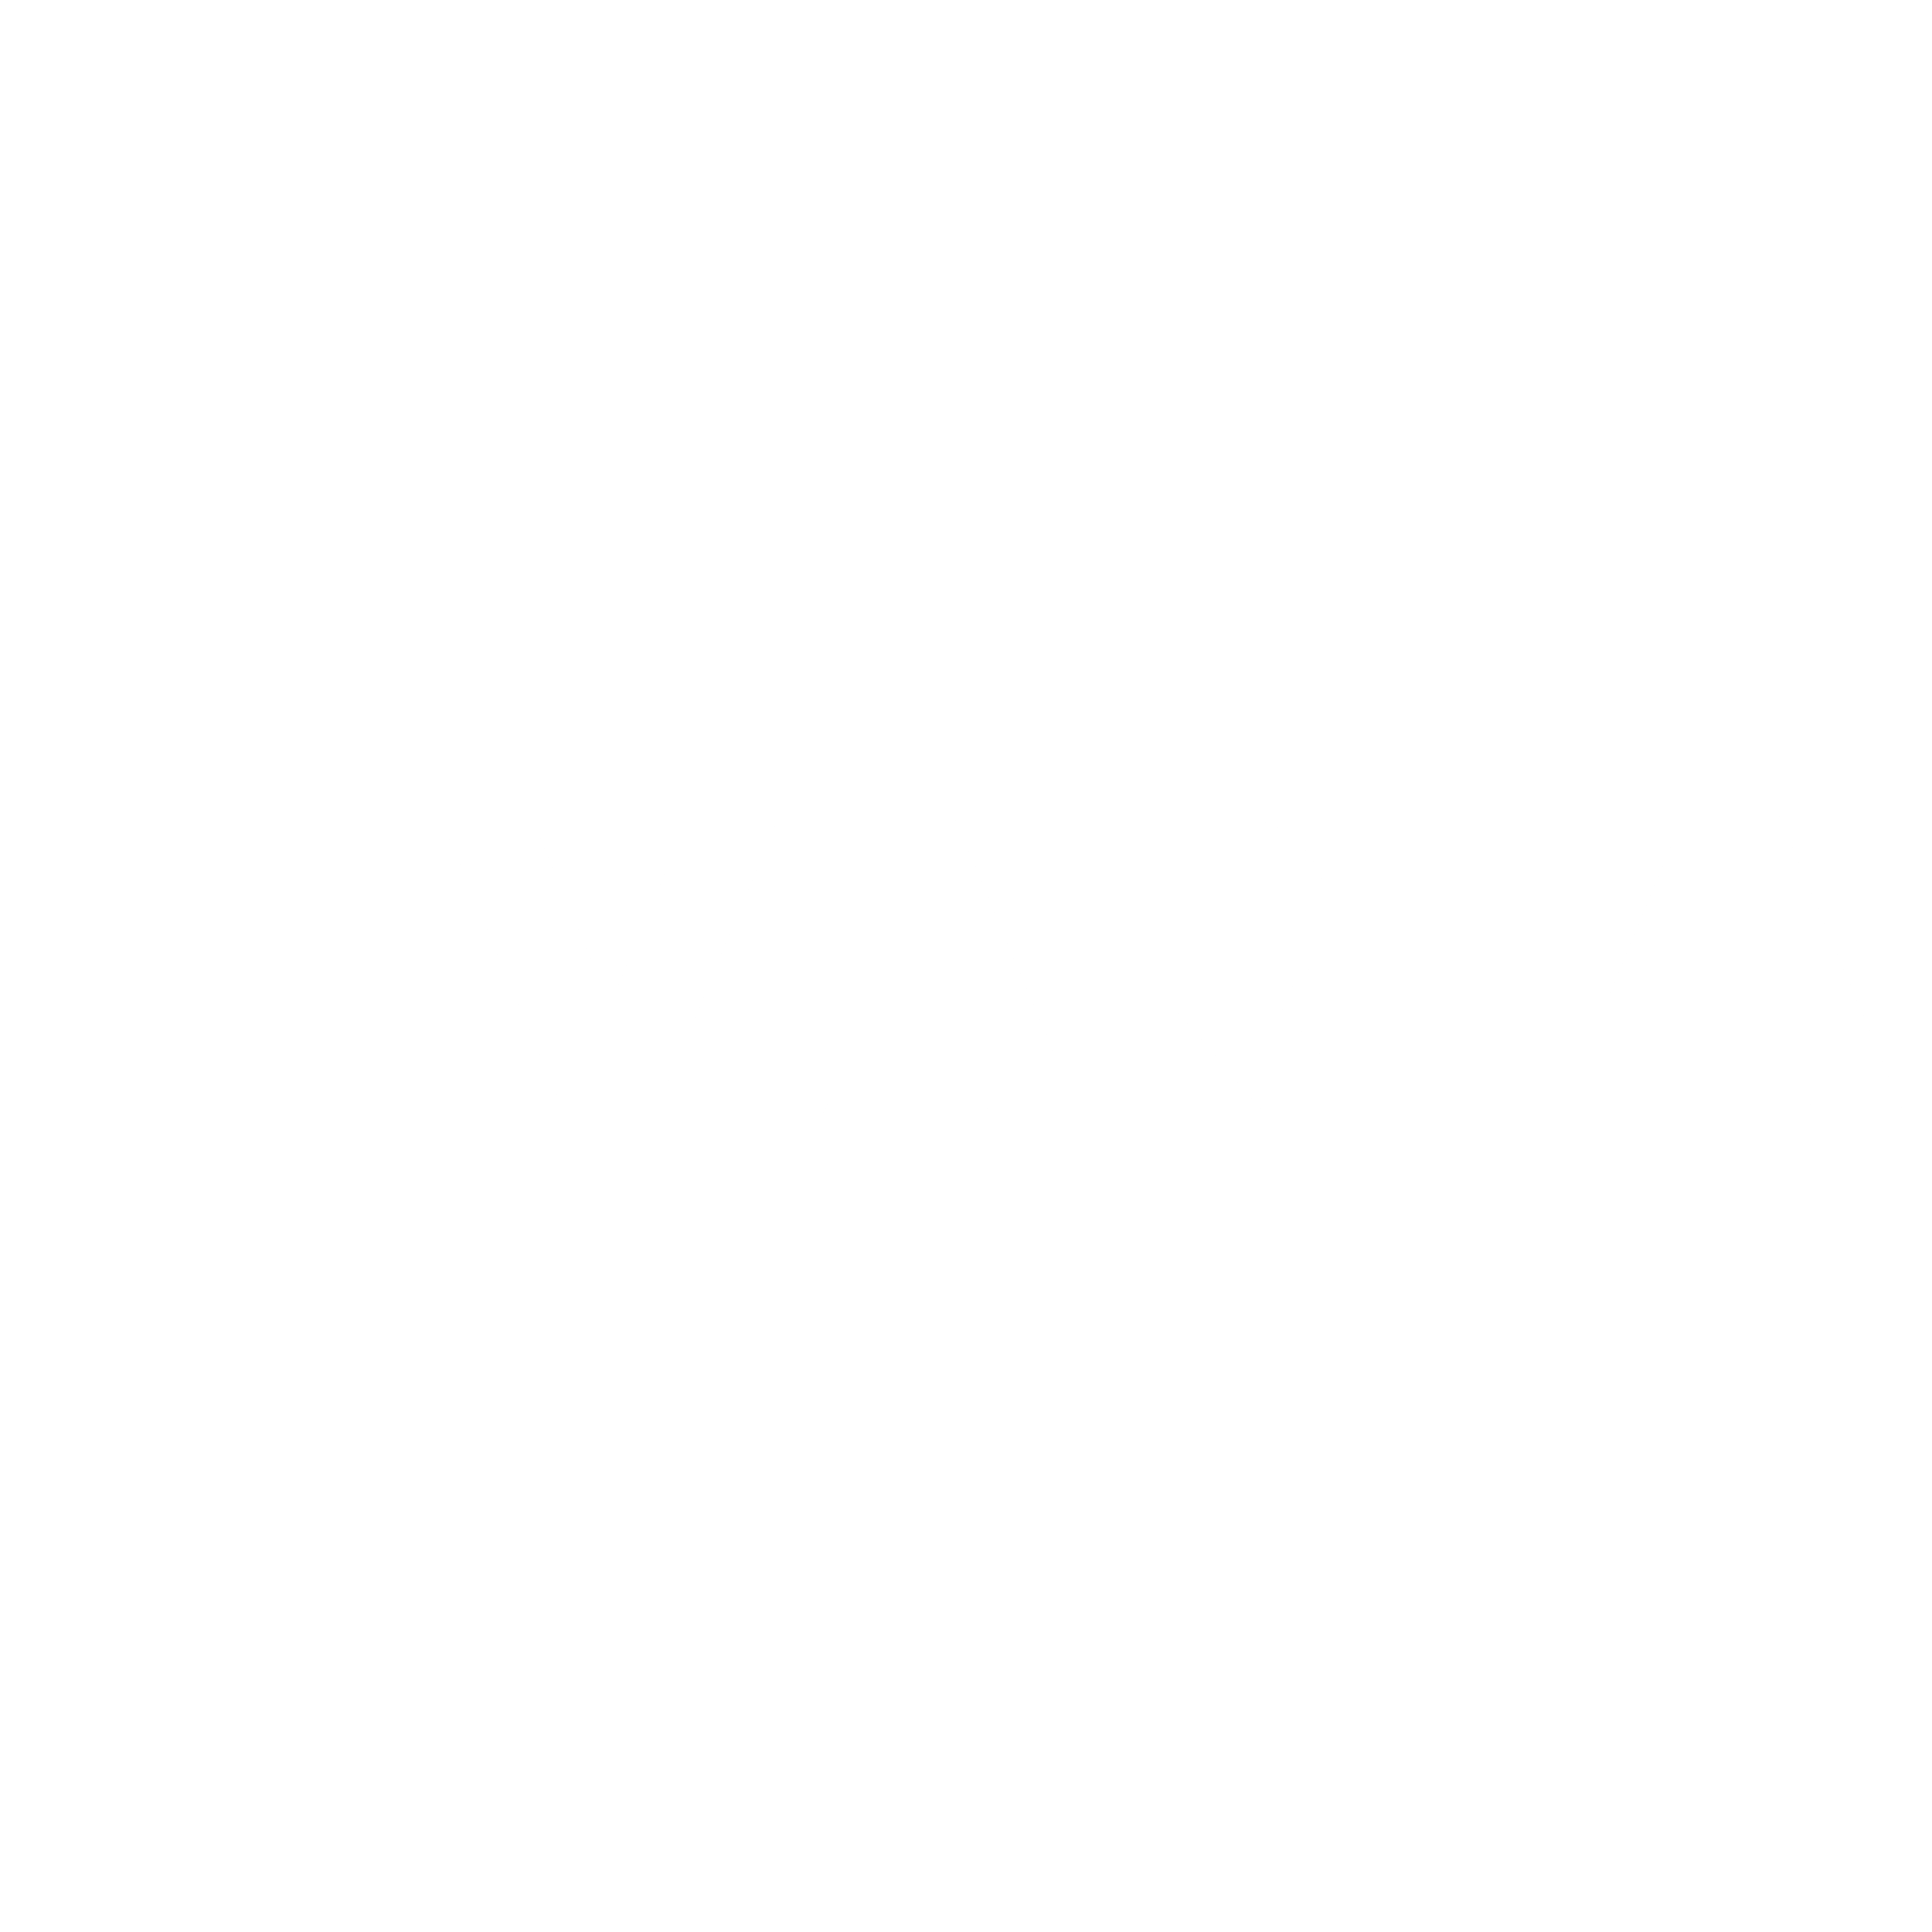 Varta Logo - Varta Logo PNG Transparent & SVG Vector - Freebie Supply